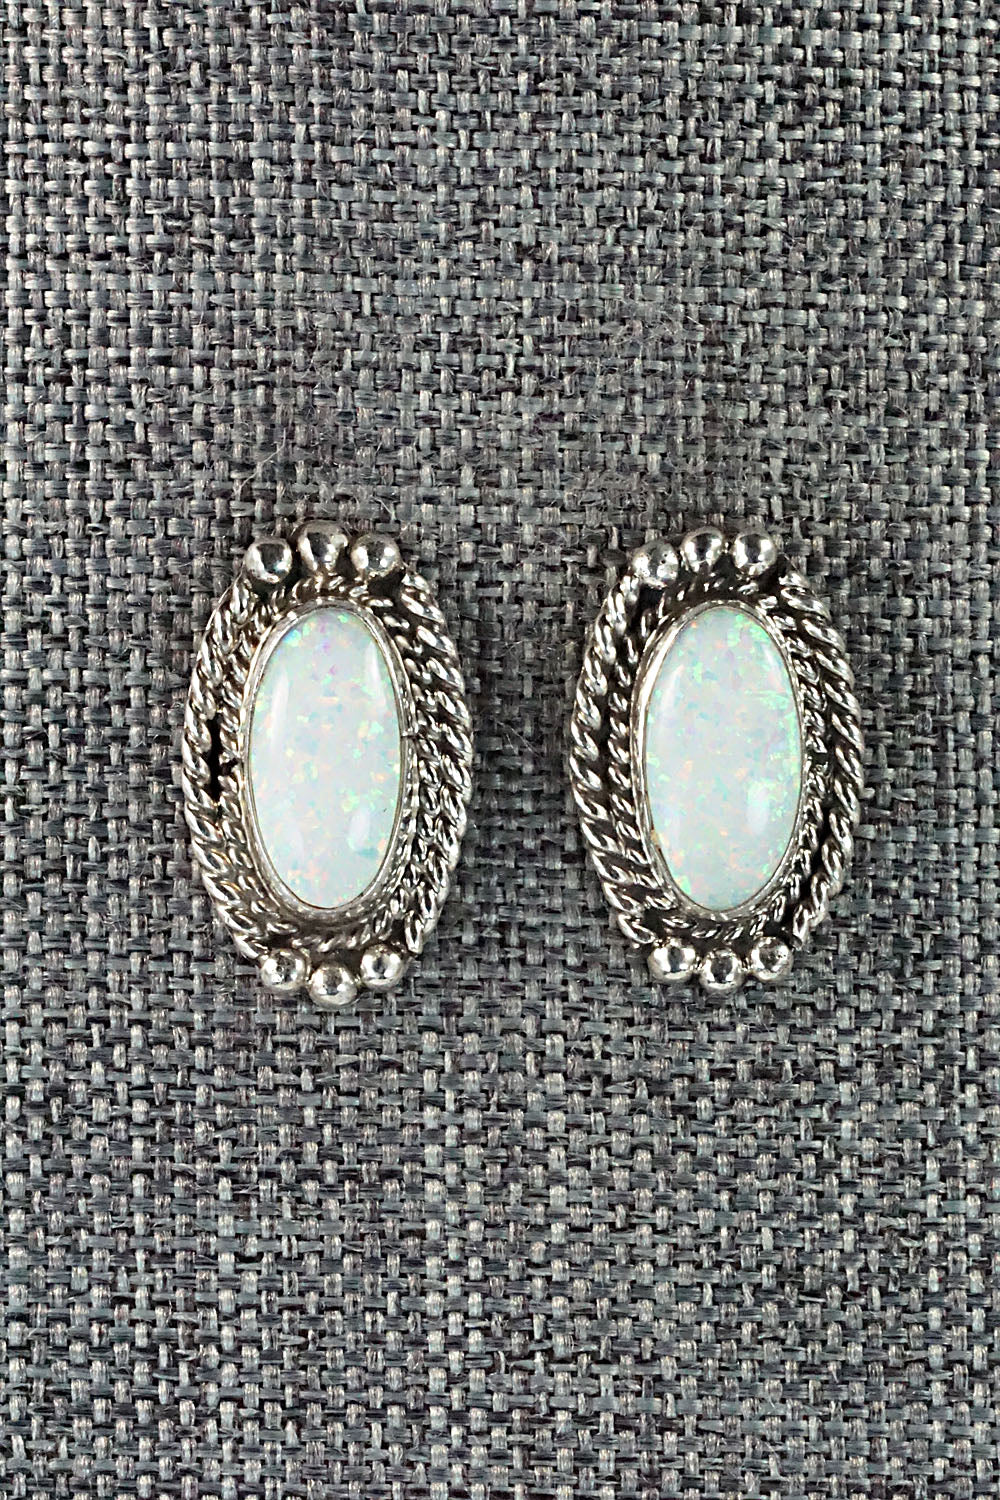 Opalite & Sterling Silver Earrings - Jan Mariano